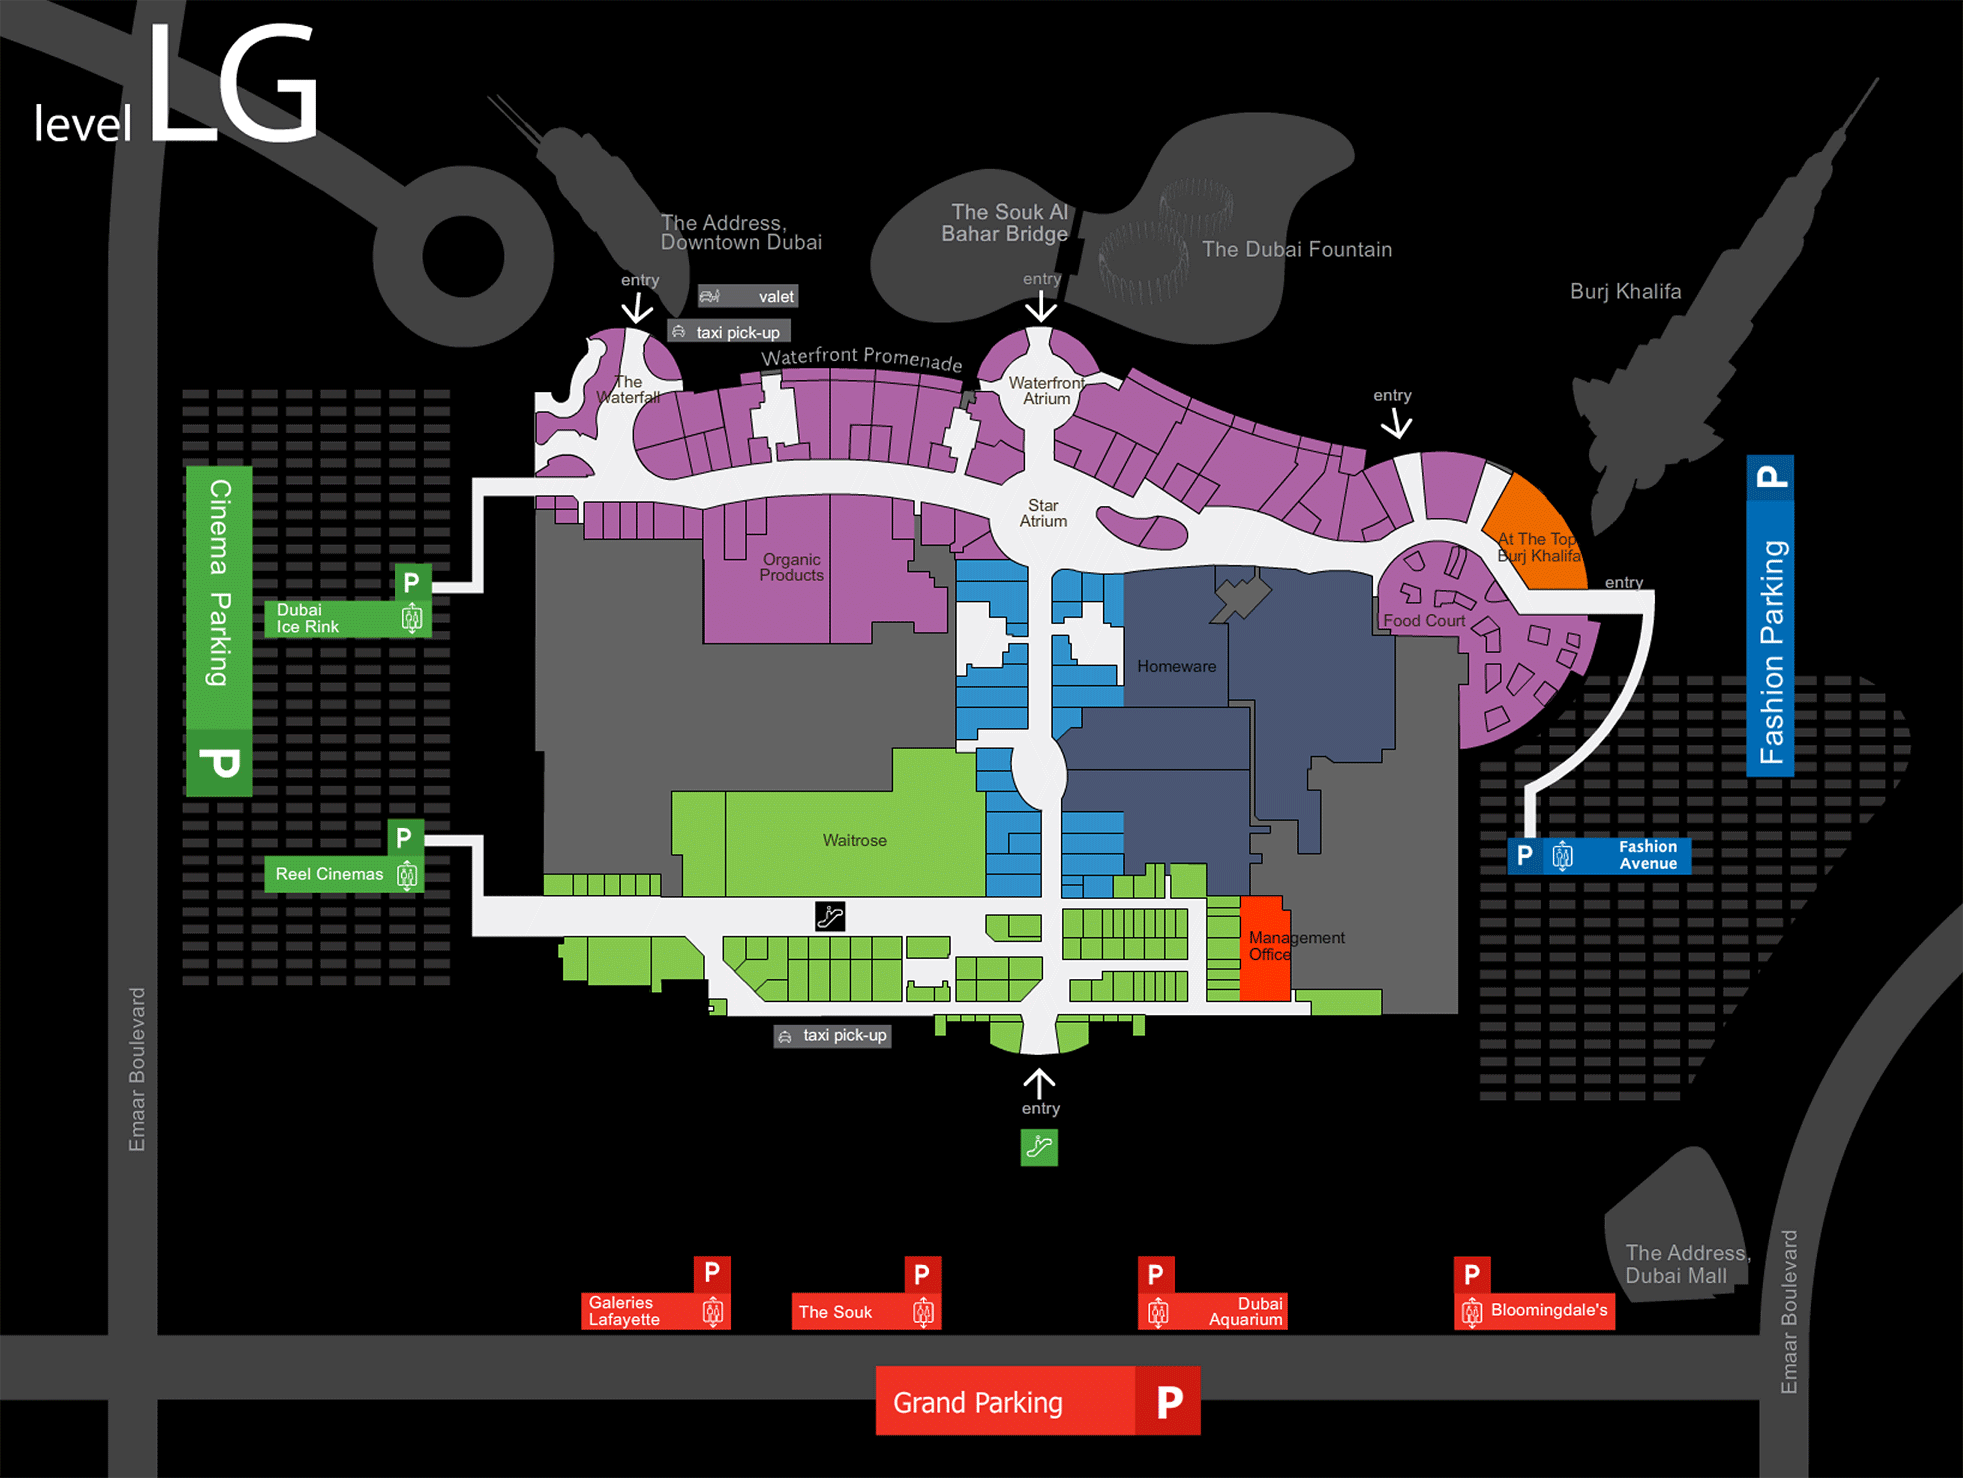 Карта нижнего этажа Level LG. На нем находится вход на смотровую площадку небоскреба Бурдж Халифа.